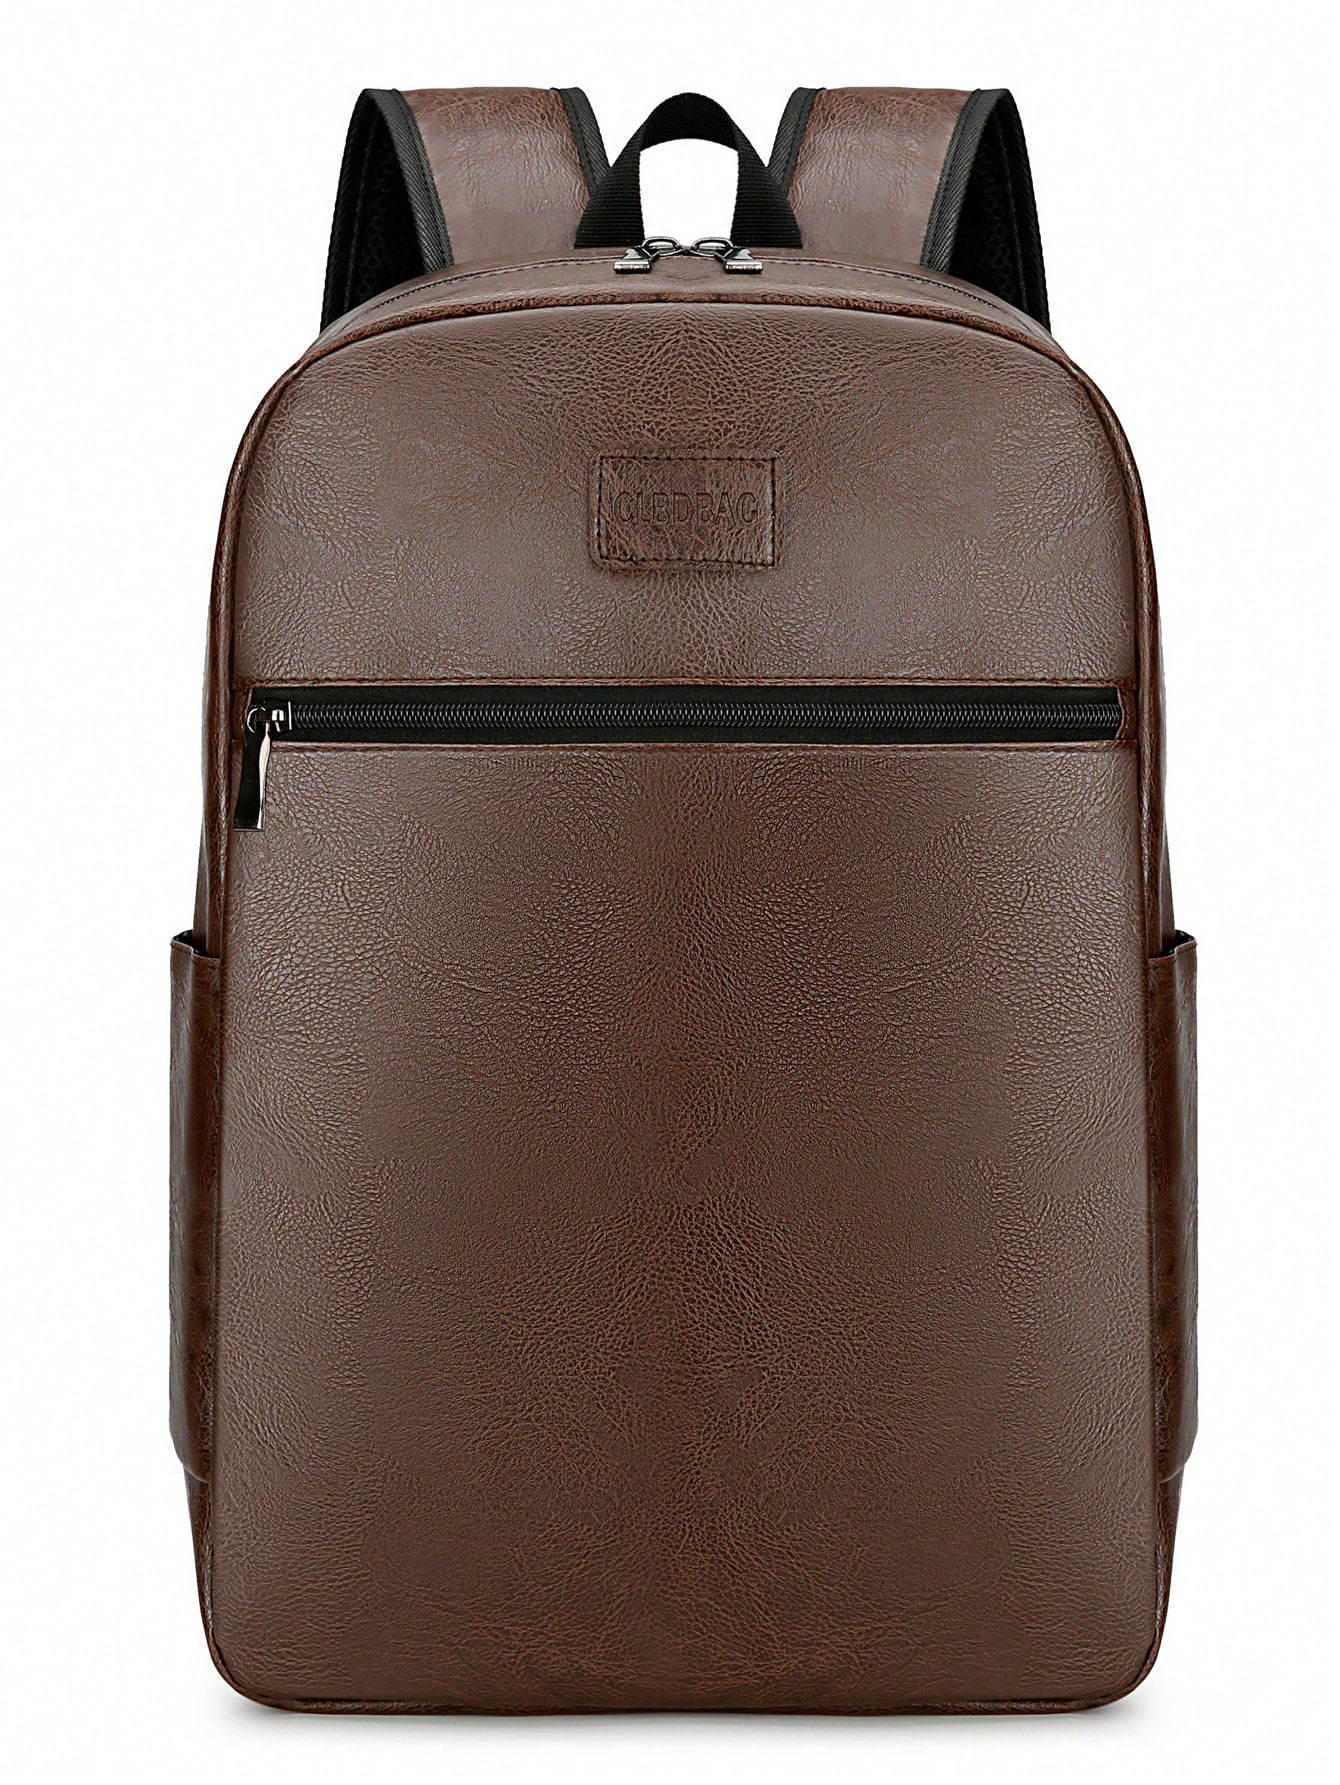 Винтажный мужской рюкзак из искусственной кожи, коричневый